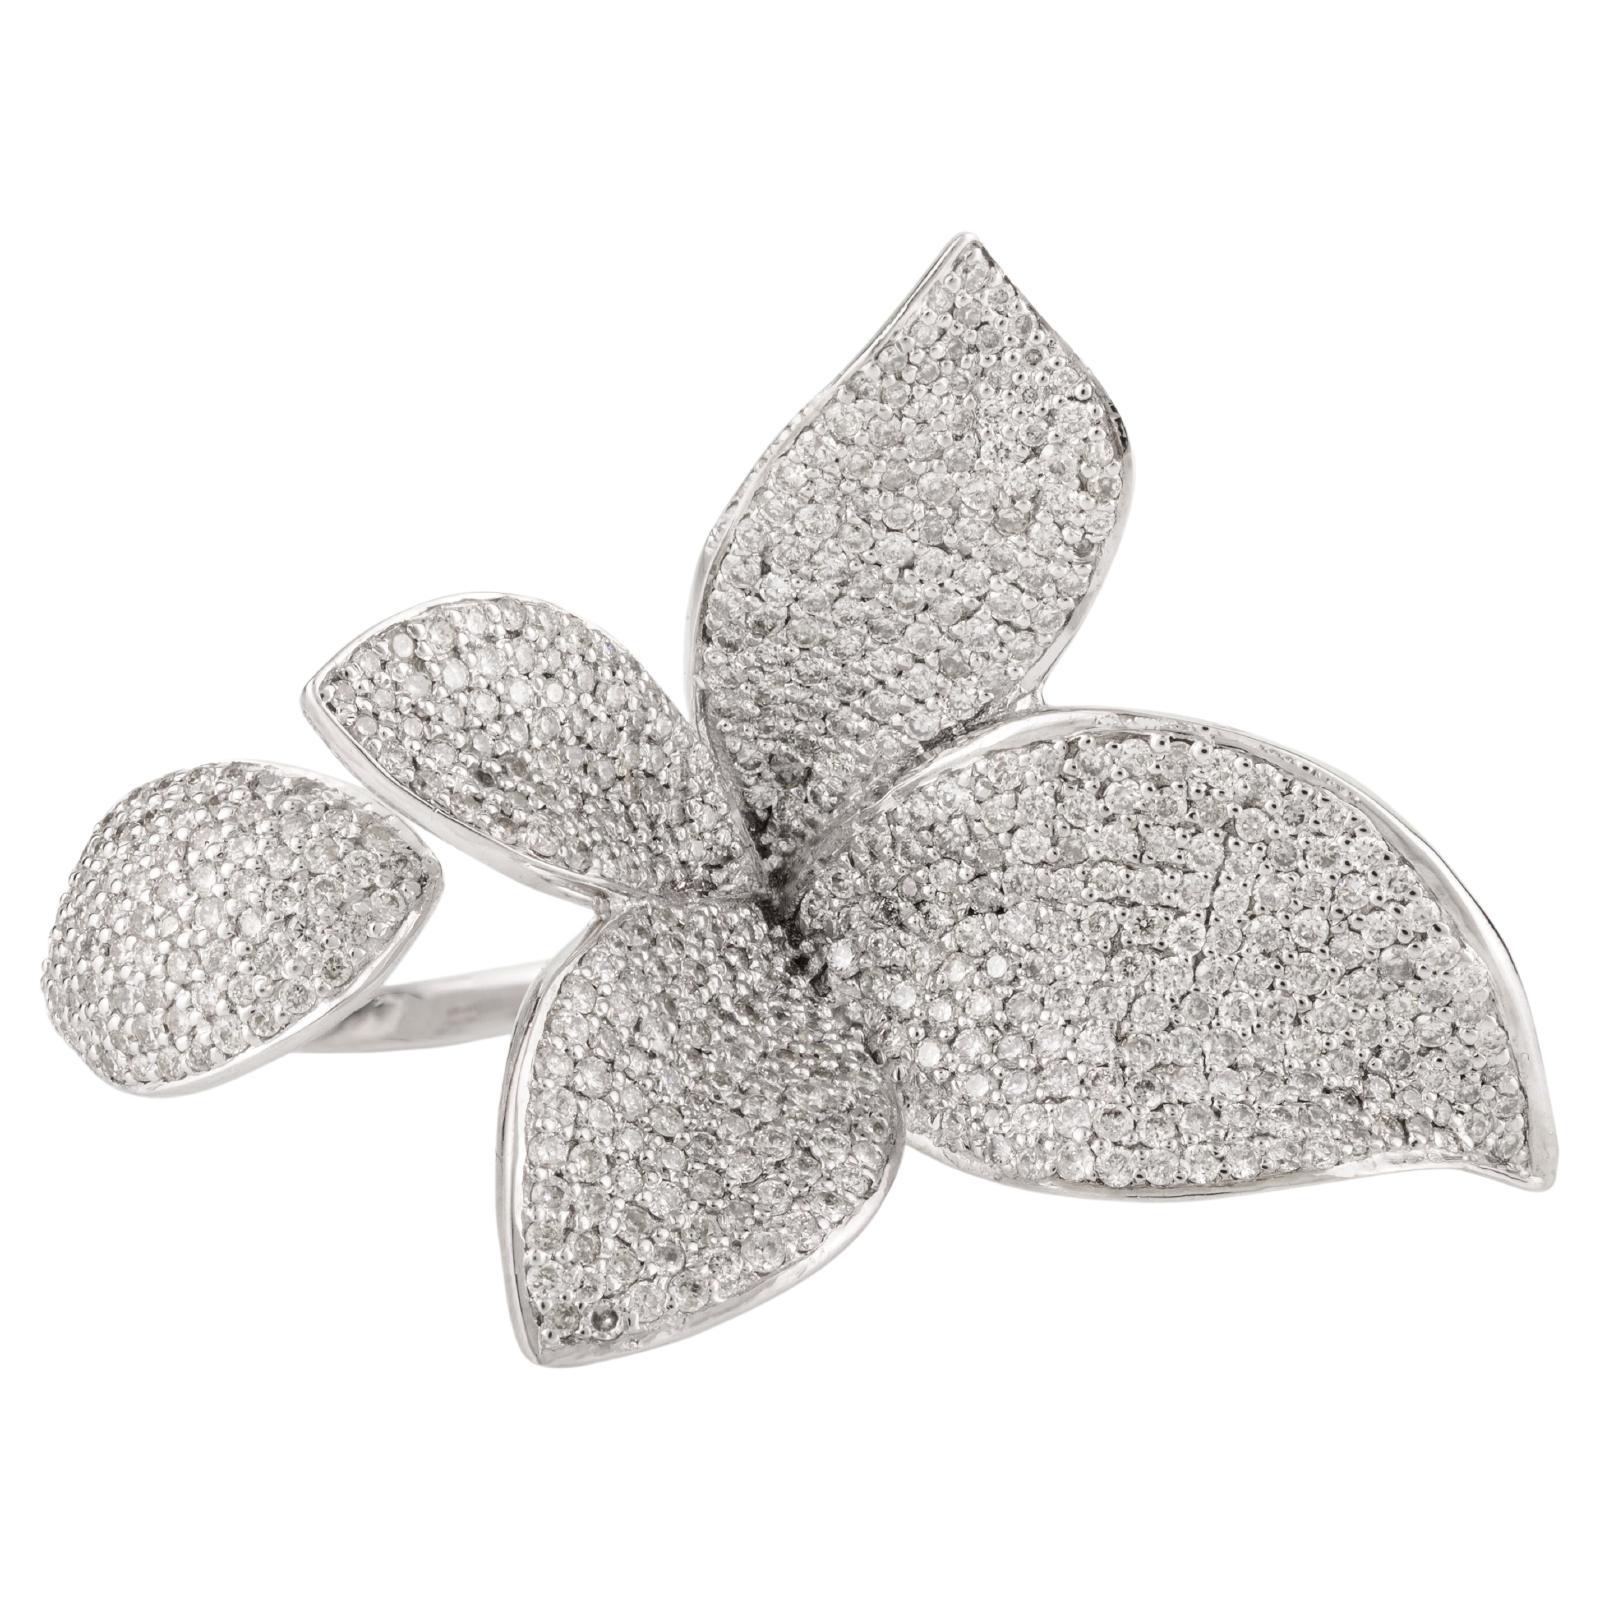 For Sale:  Designer 2 Carat Diamond Flower Cocktail Ring in 18k White Gold for Women